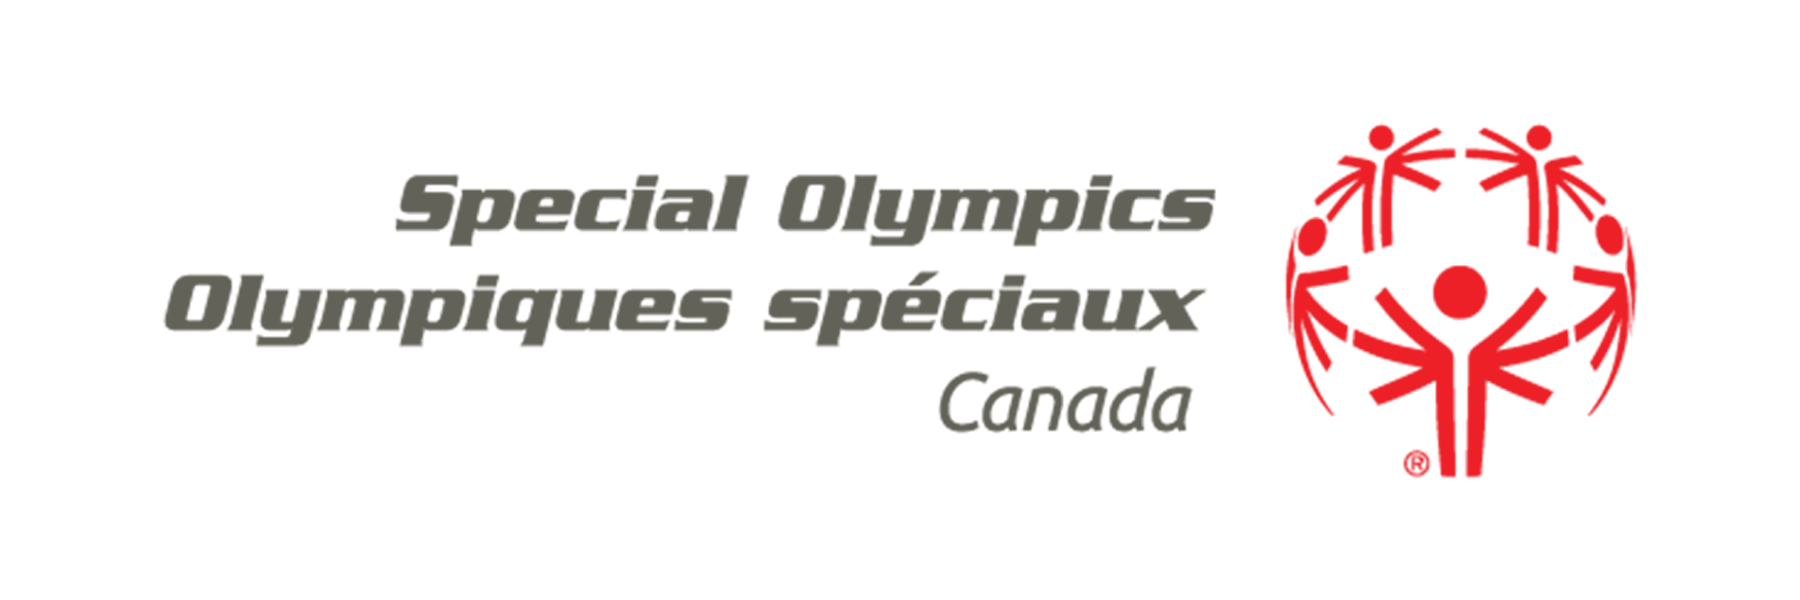 Canadian Special Olympics logo